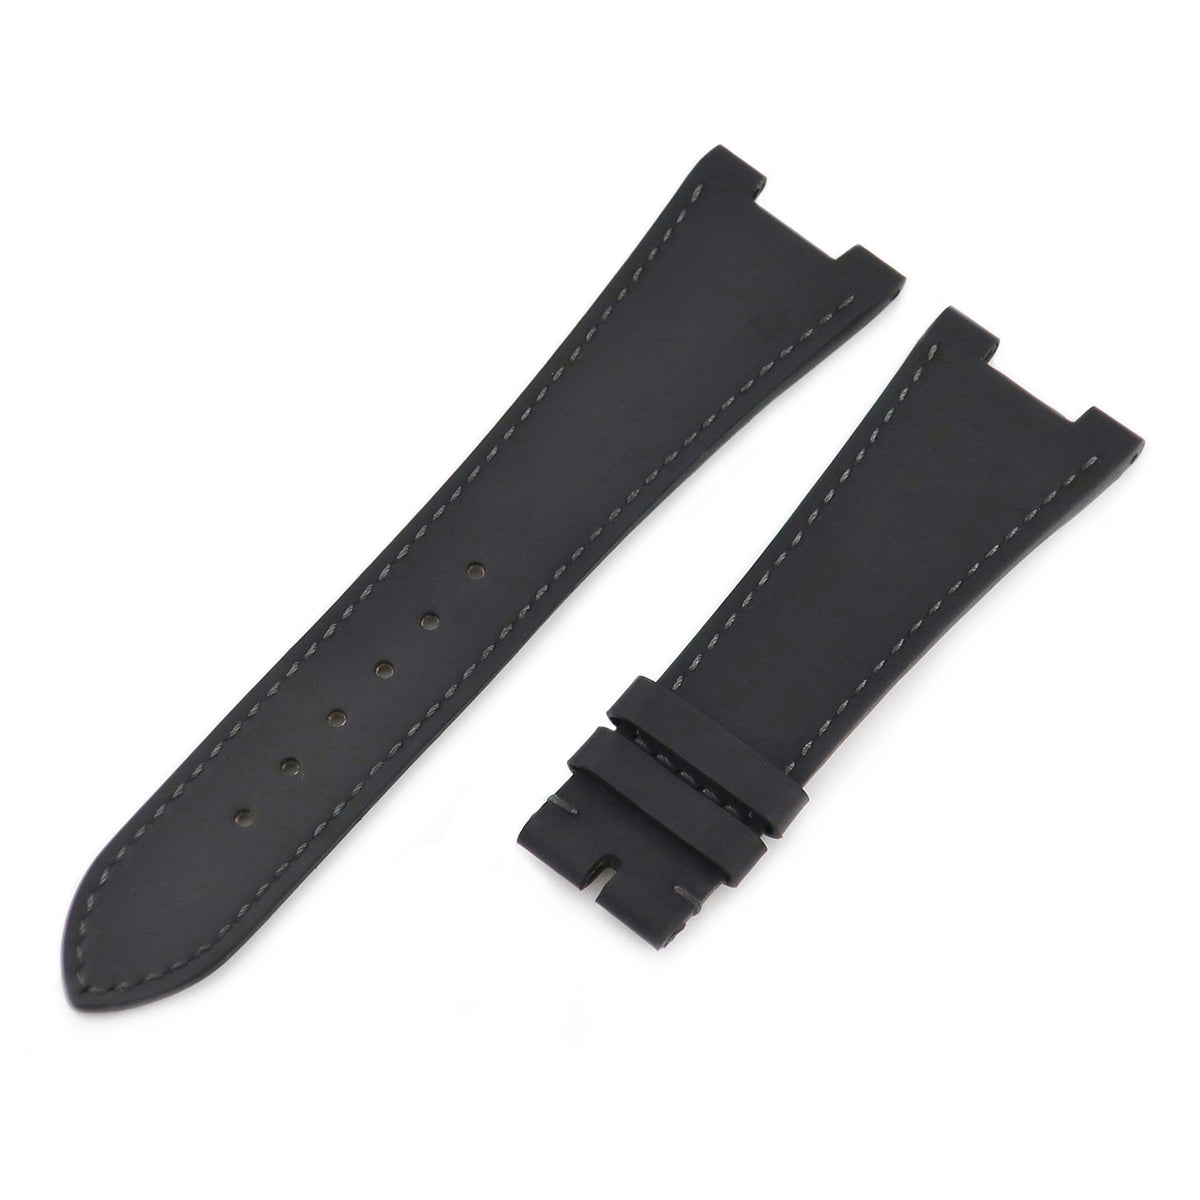 パテックフィリップ PATEK PHILIPPE メンズ 未使用 純正レザーベルト 革ベルト バンド 25mm 腕時計 黒